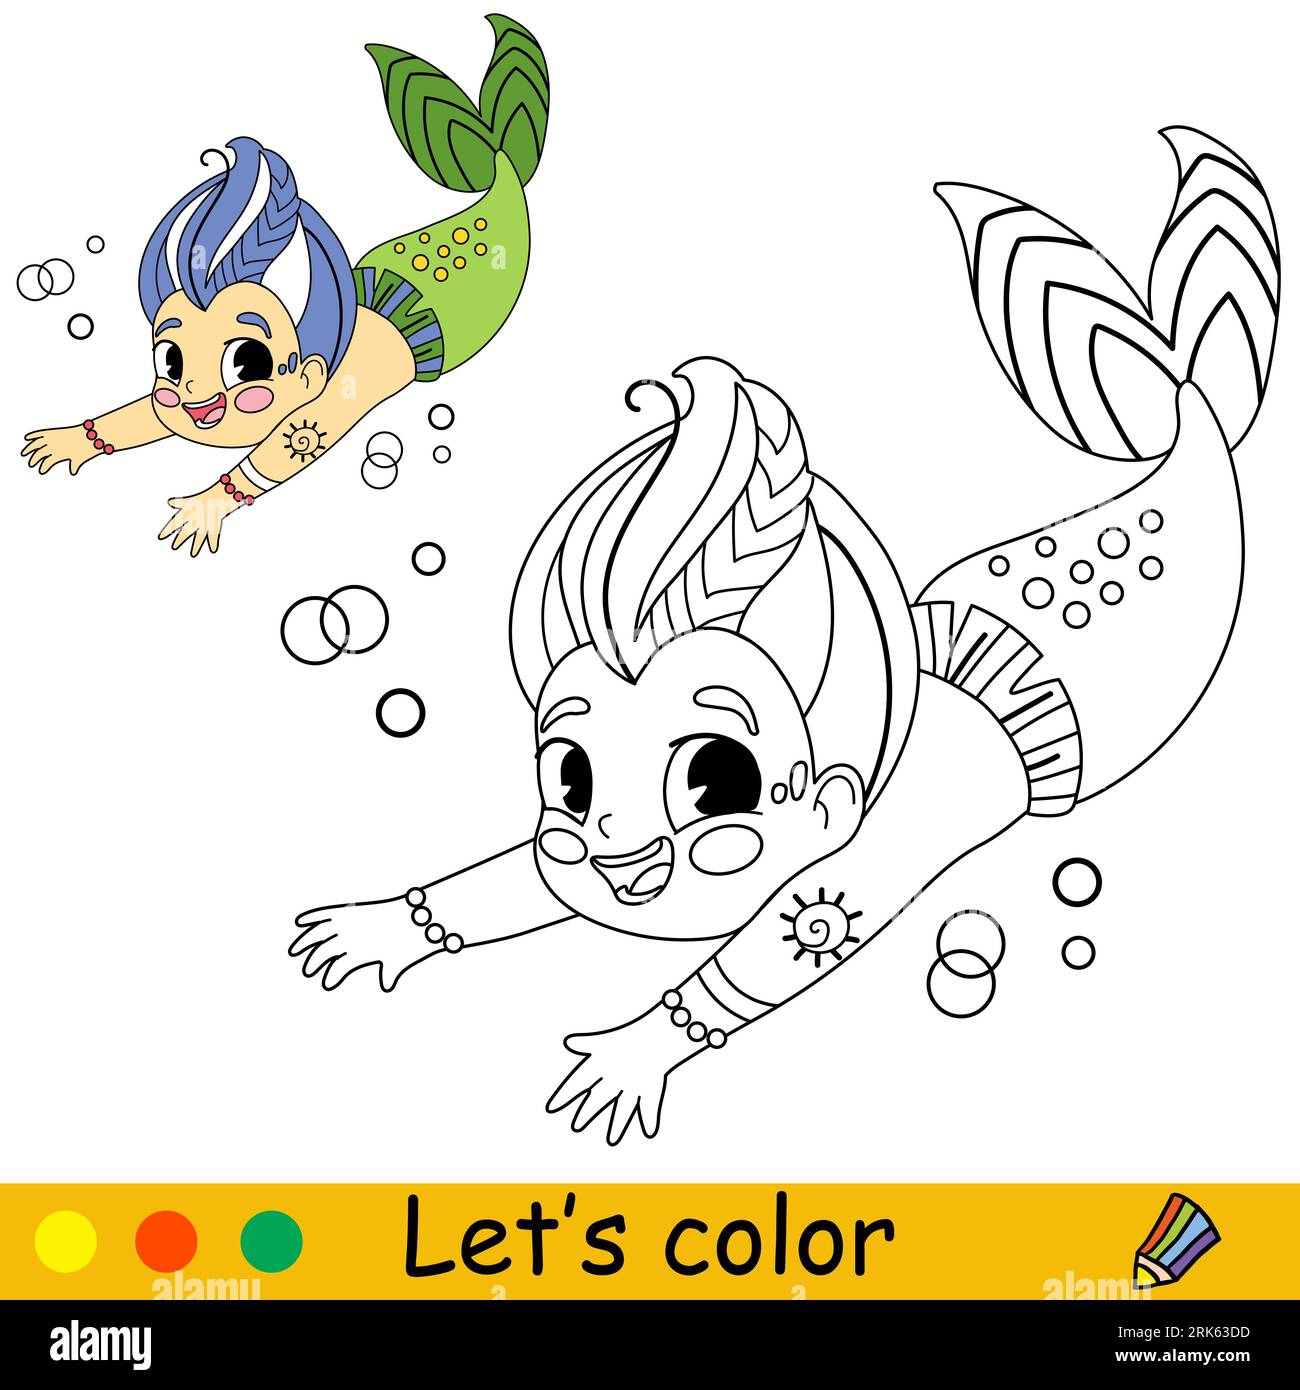 Le dessin d'anniversaire - trouver les meilleures exemples  Super mario  coloring pages, Birthday coloring pages, Mario coloring pages